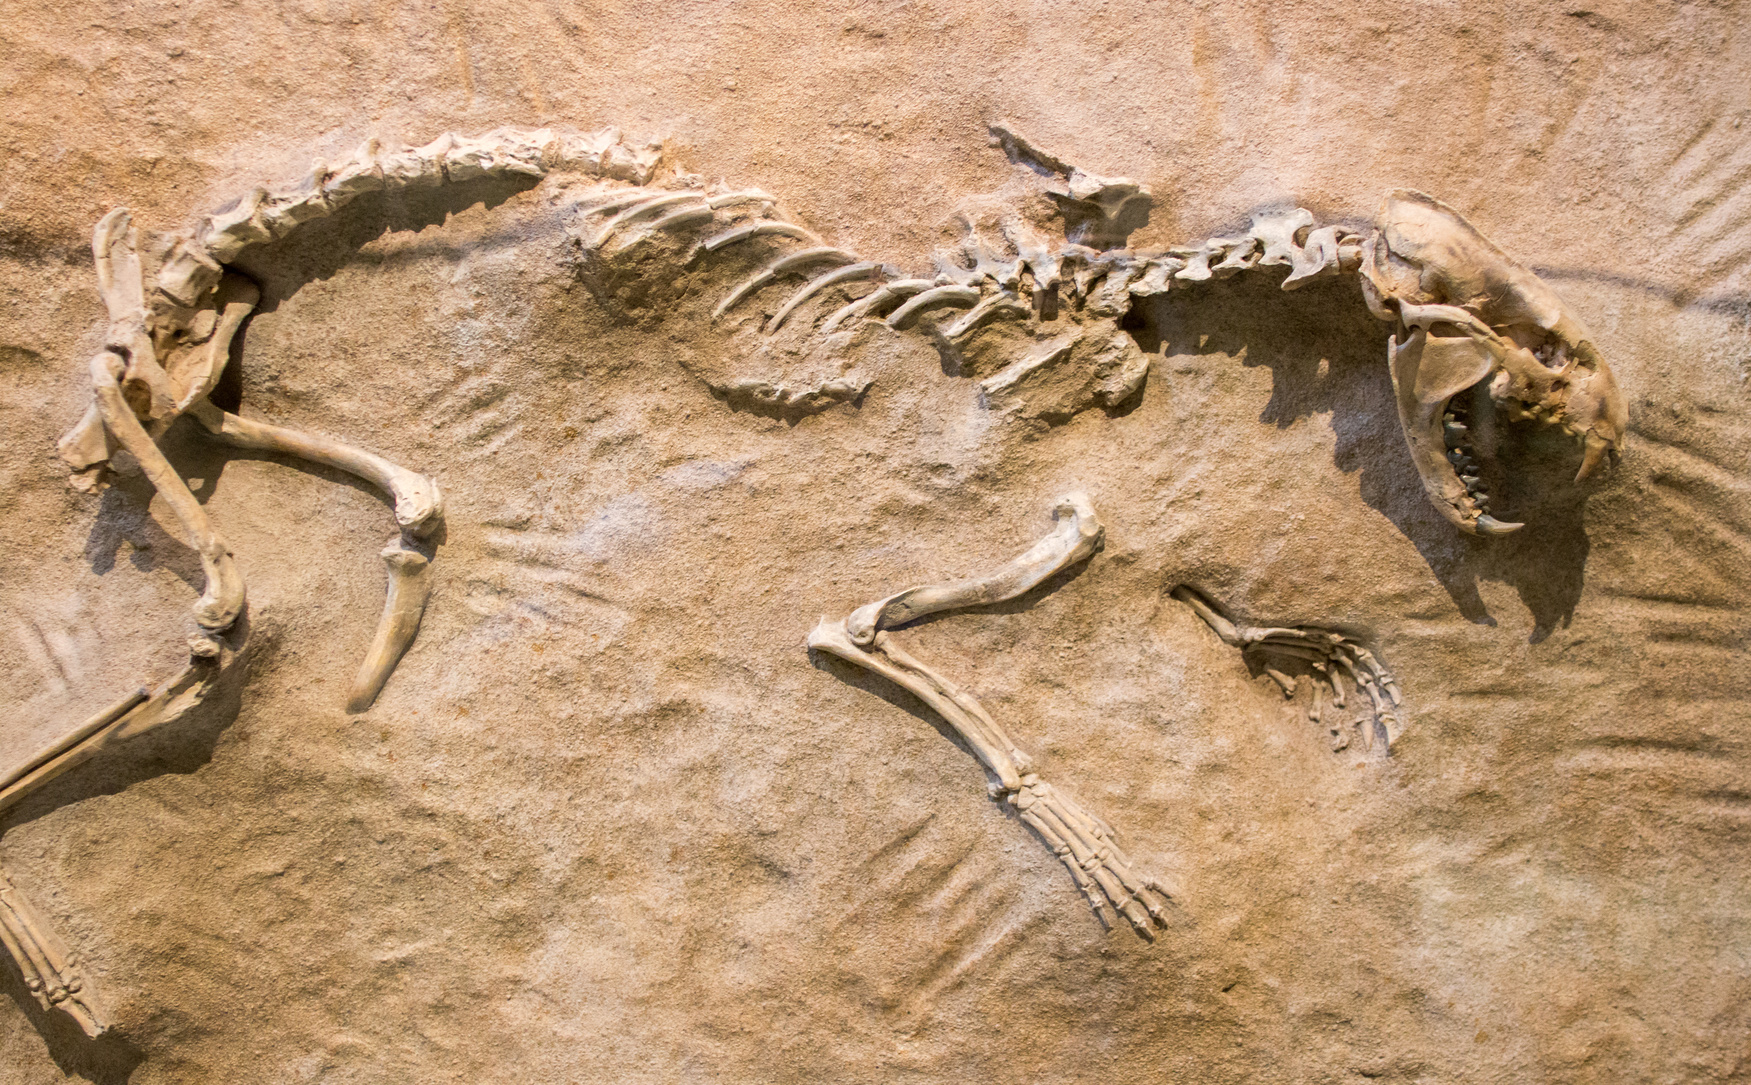 Exemple de squelette d’animal préhistorique fossilisé dans la roche. Le paléontologue fera une analyse ADN sur les fragments d’os afin de connaître l’espèce et son histoire. © marls, Fotolia.